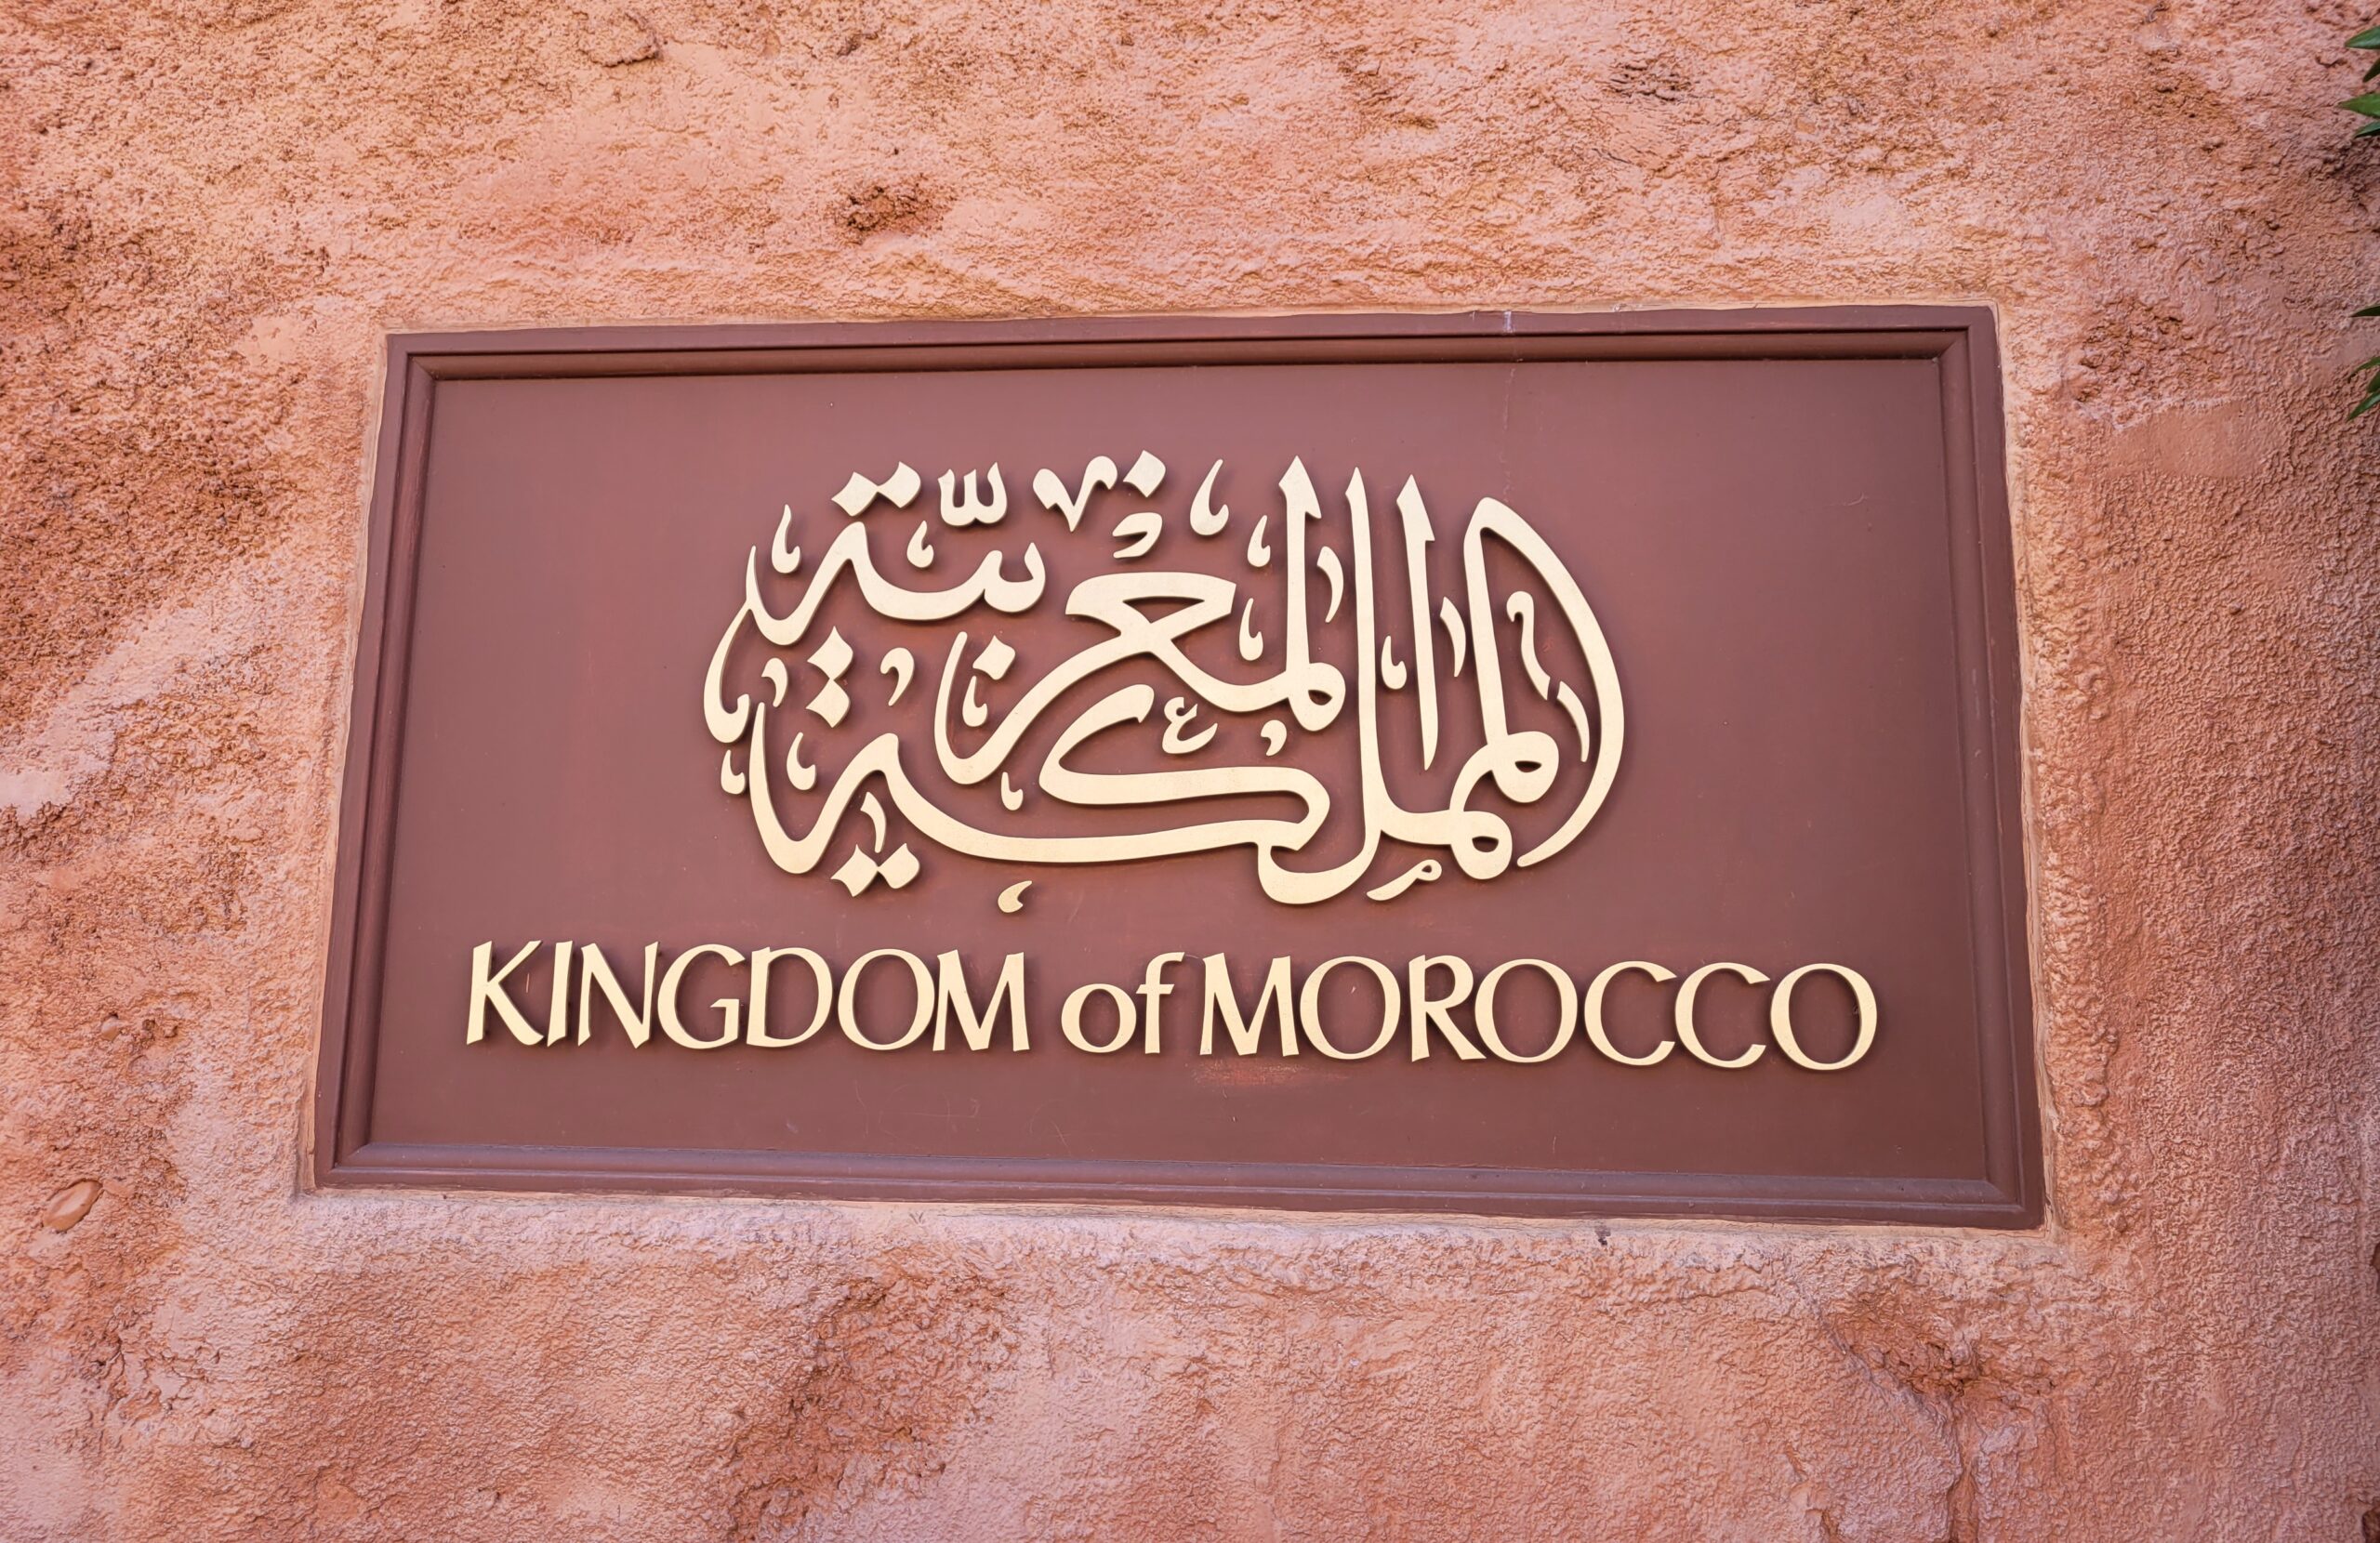 Kingdom of Morocco Sign in Epcot's World Showcase